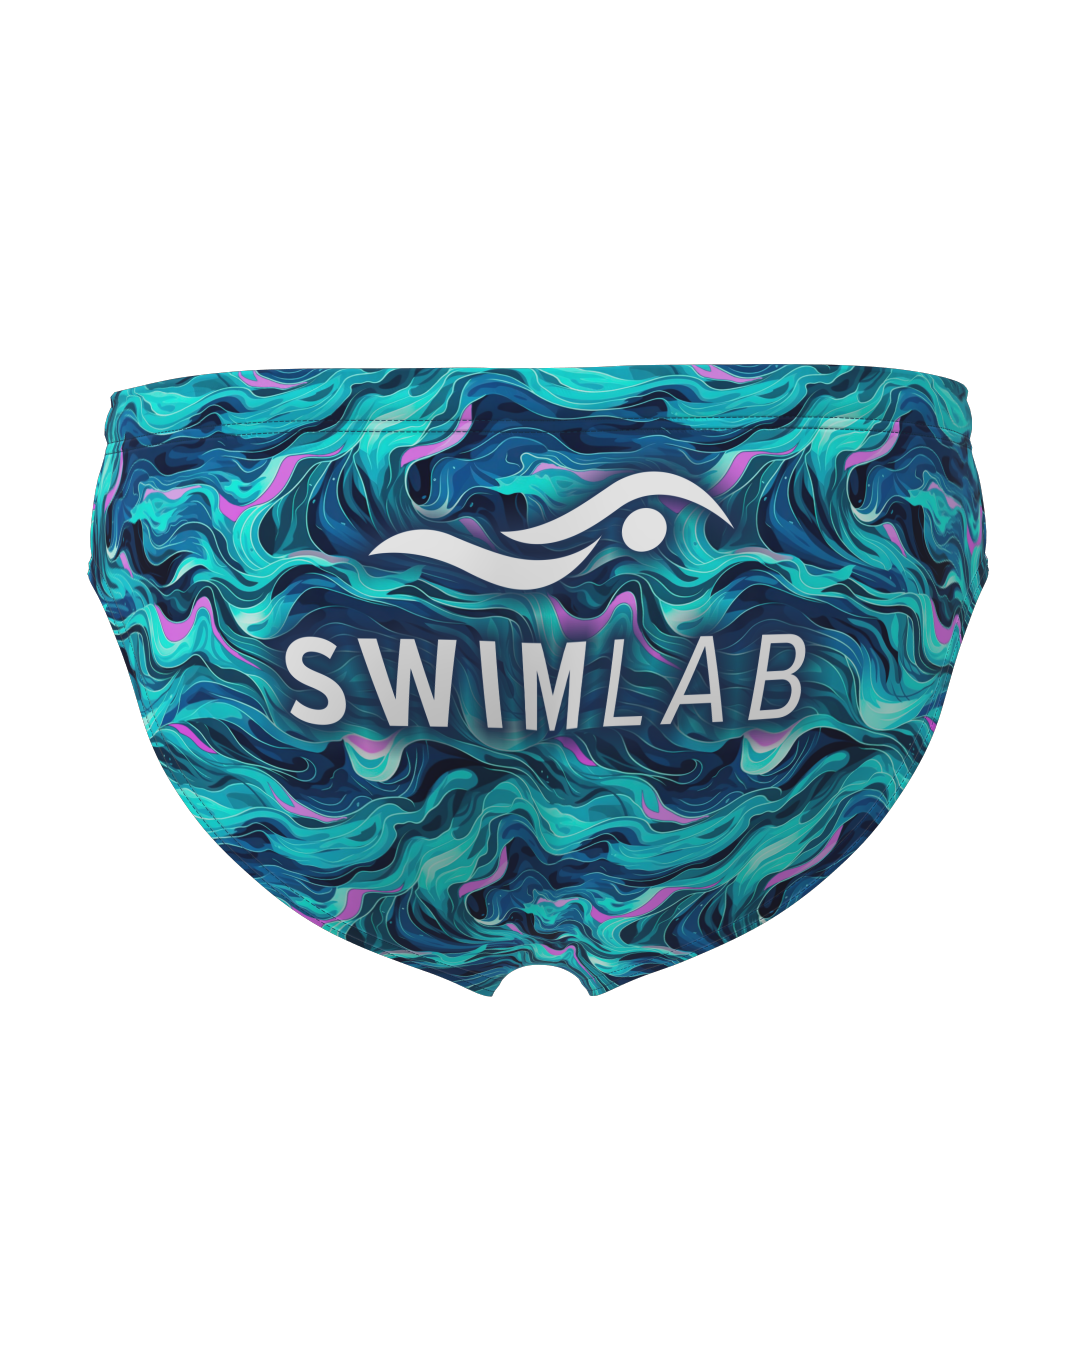 Swim Lab Men's Briefs